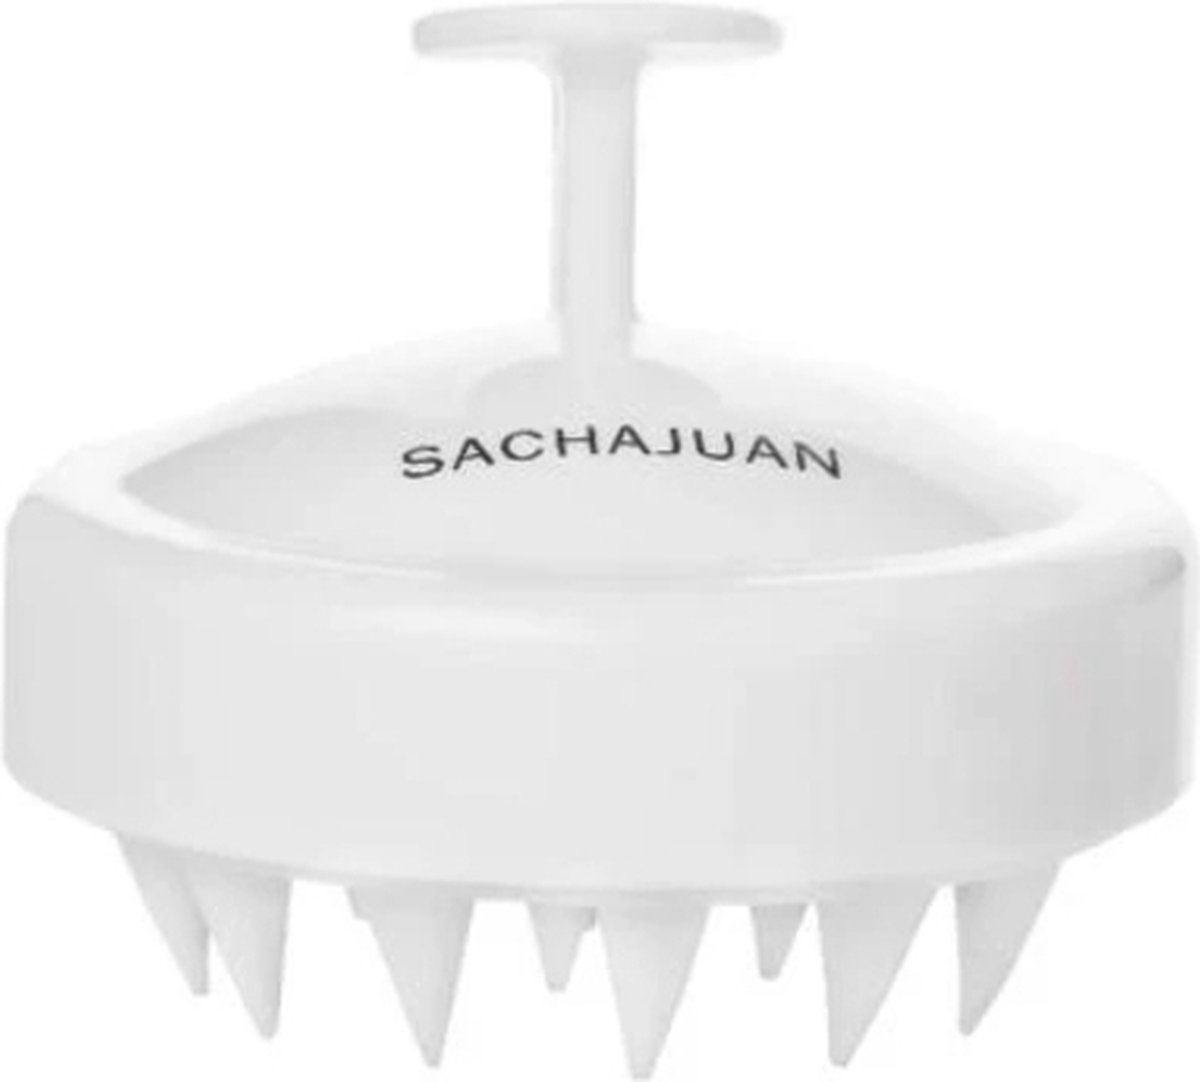 Sacha Juan Scalp Brush